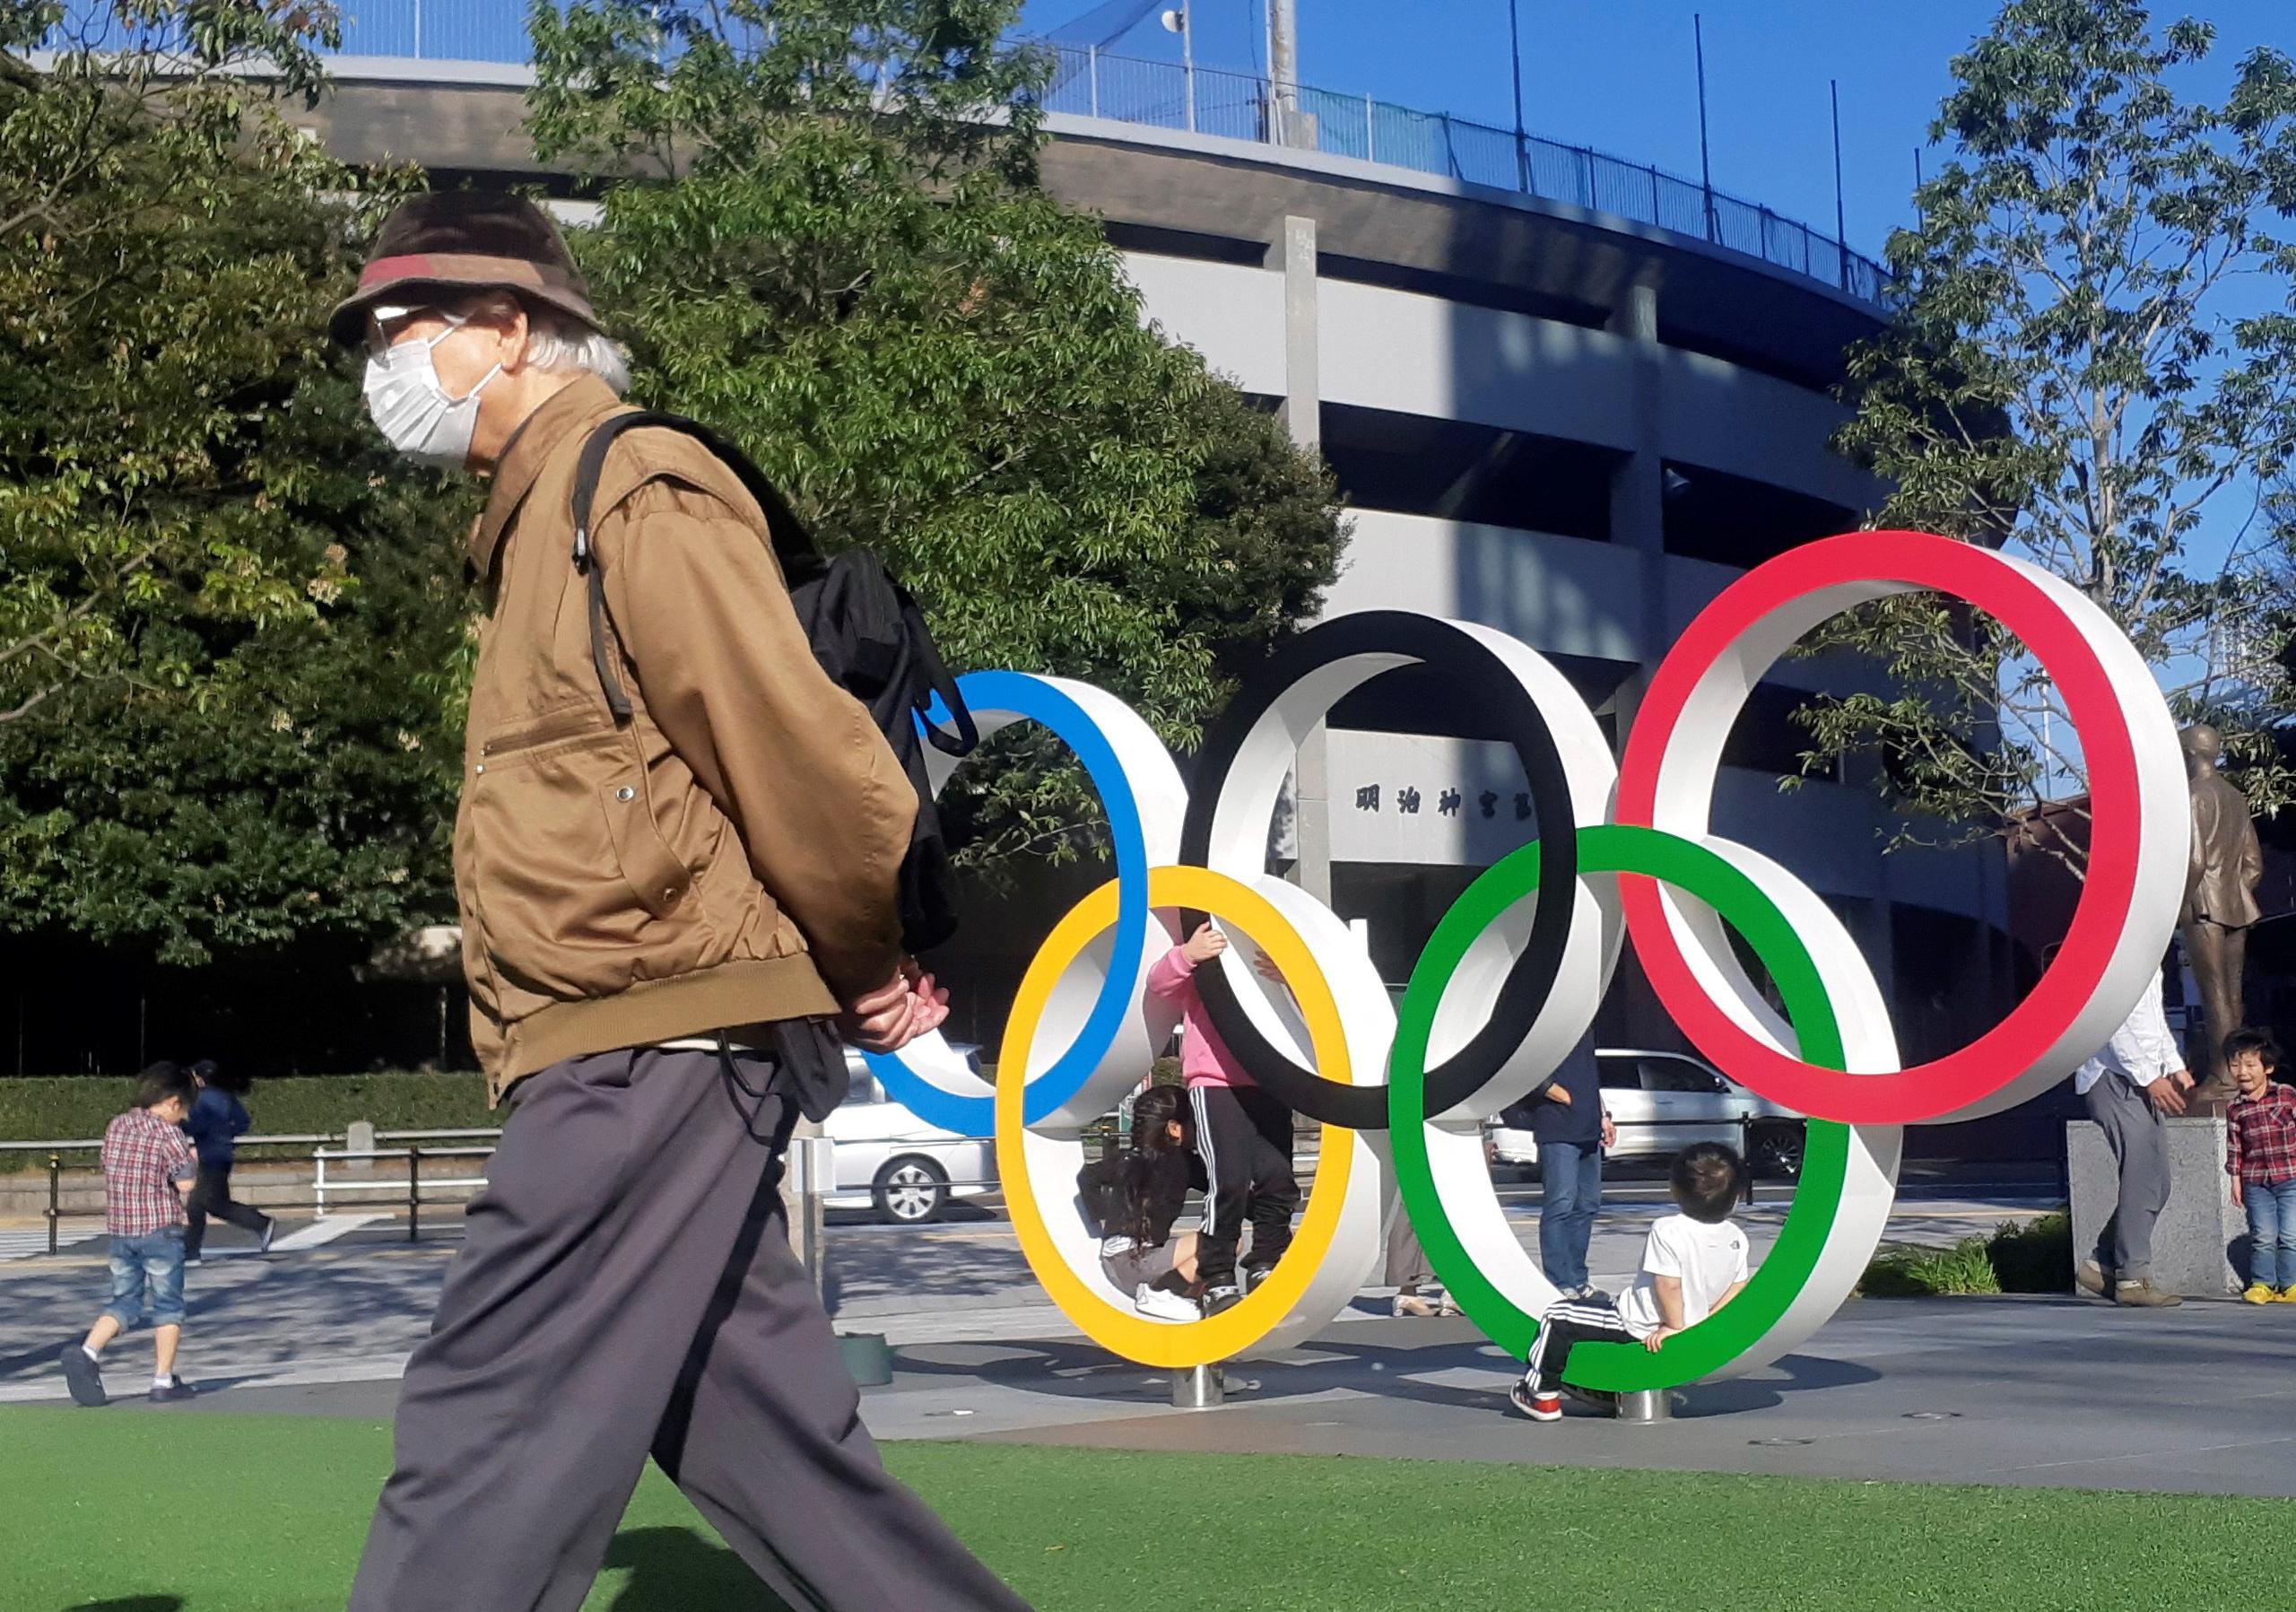 Un hombre protegido por una máscara para evitar posibles contagios da la espalda a los anillos olímpicos instalados en Tokio. Los Juegos Olímpicos de Tokio 2020 se han convertido en un foco de incertidumbre para los japoneses frente a la decisión del COI de continuar los preparativos para las fechas programadas pese a la pandemia del coronavirus.